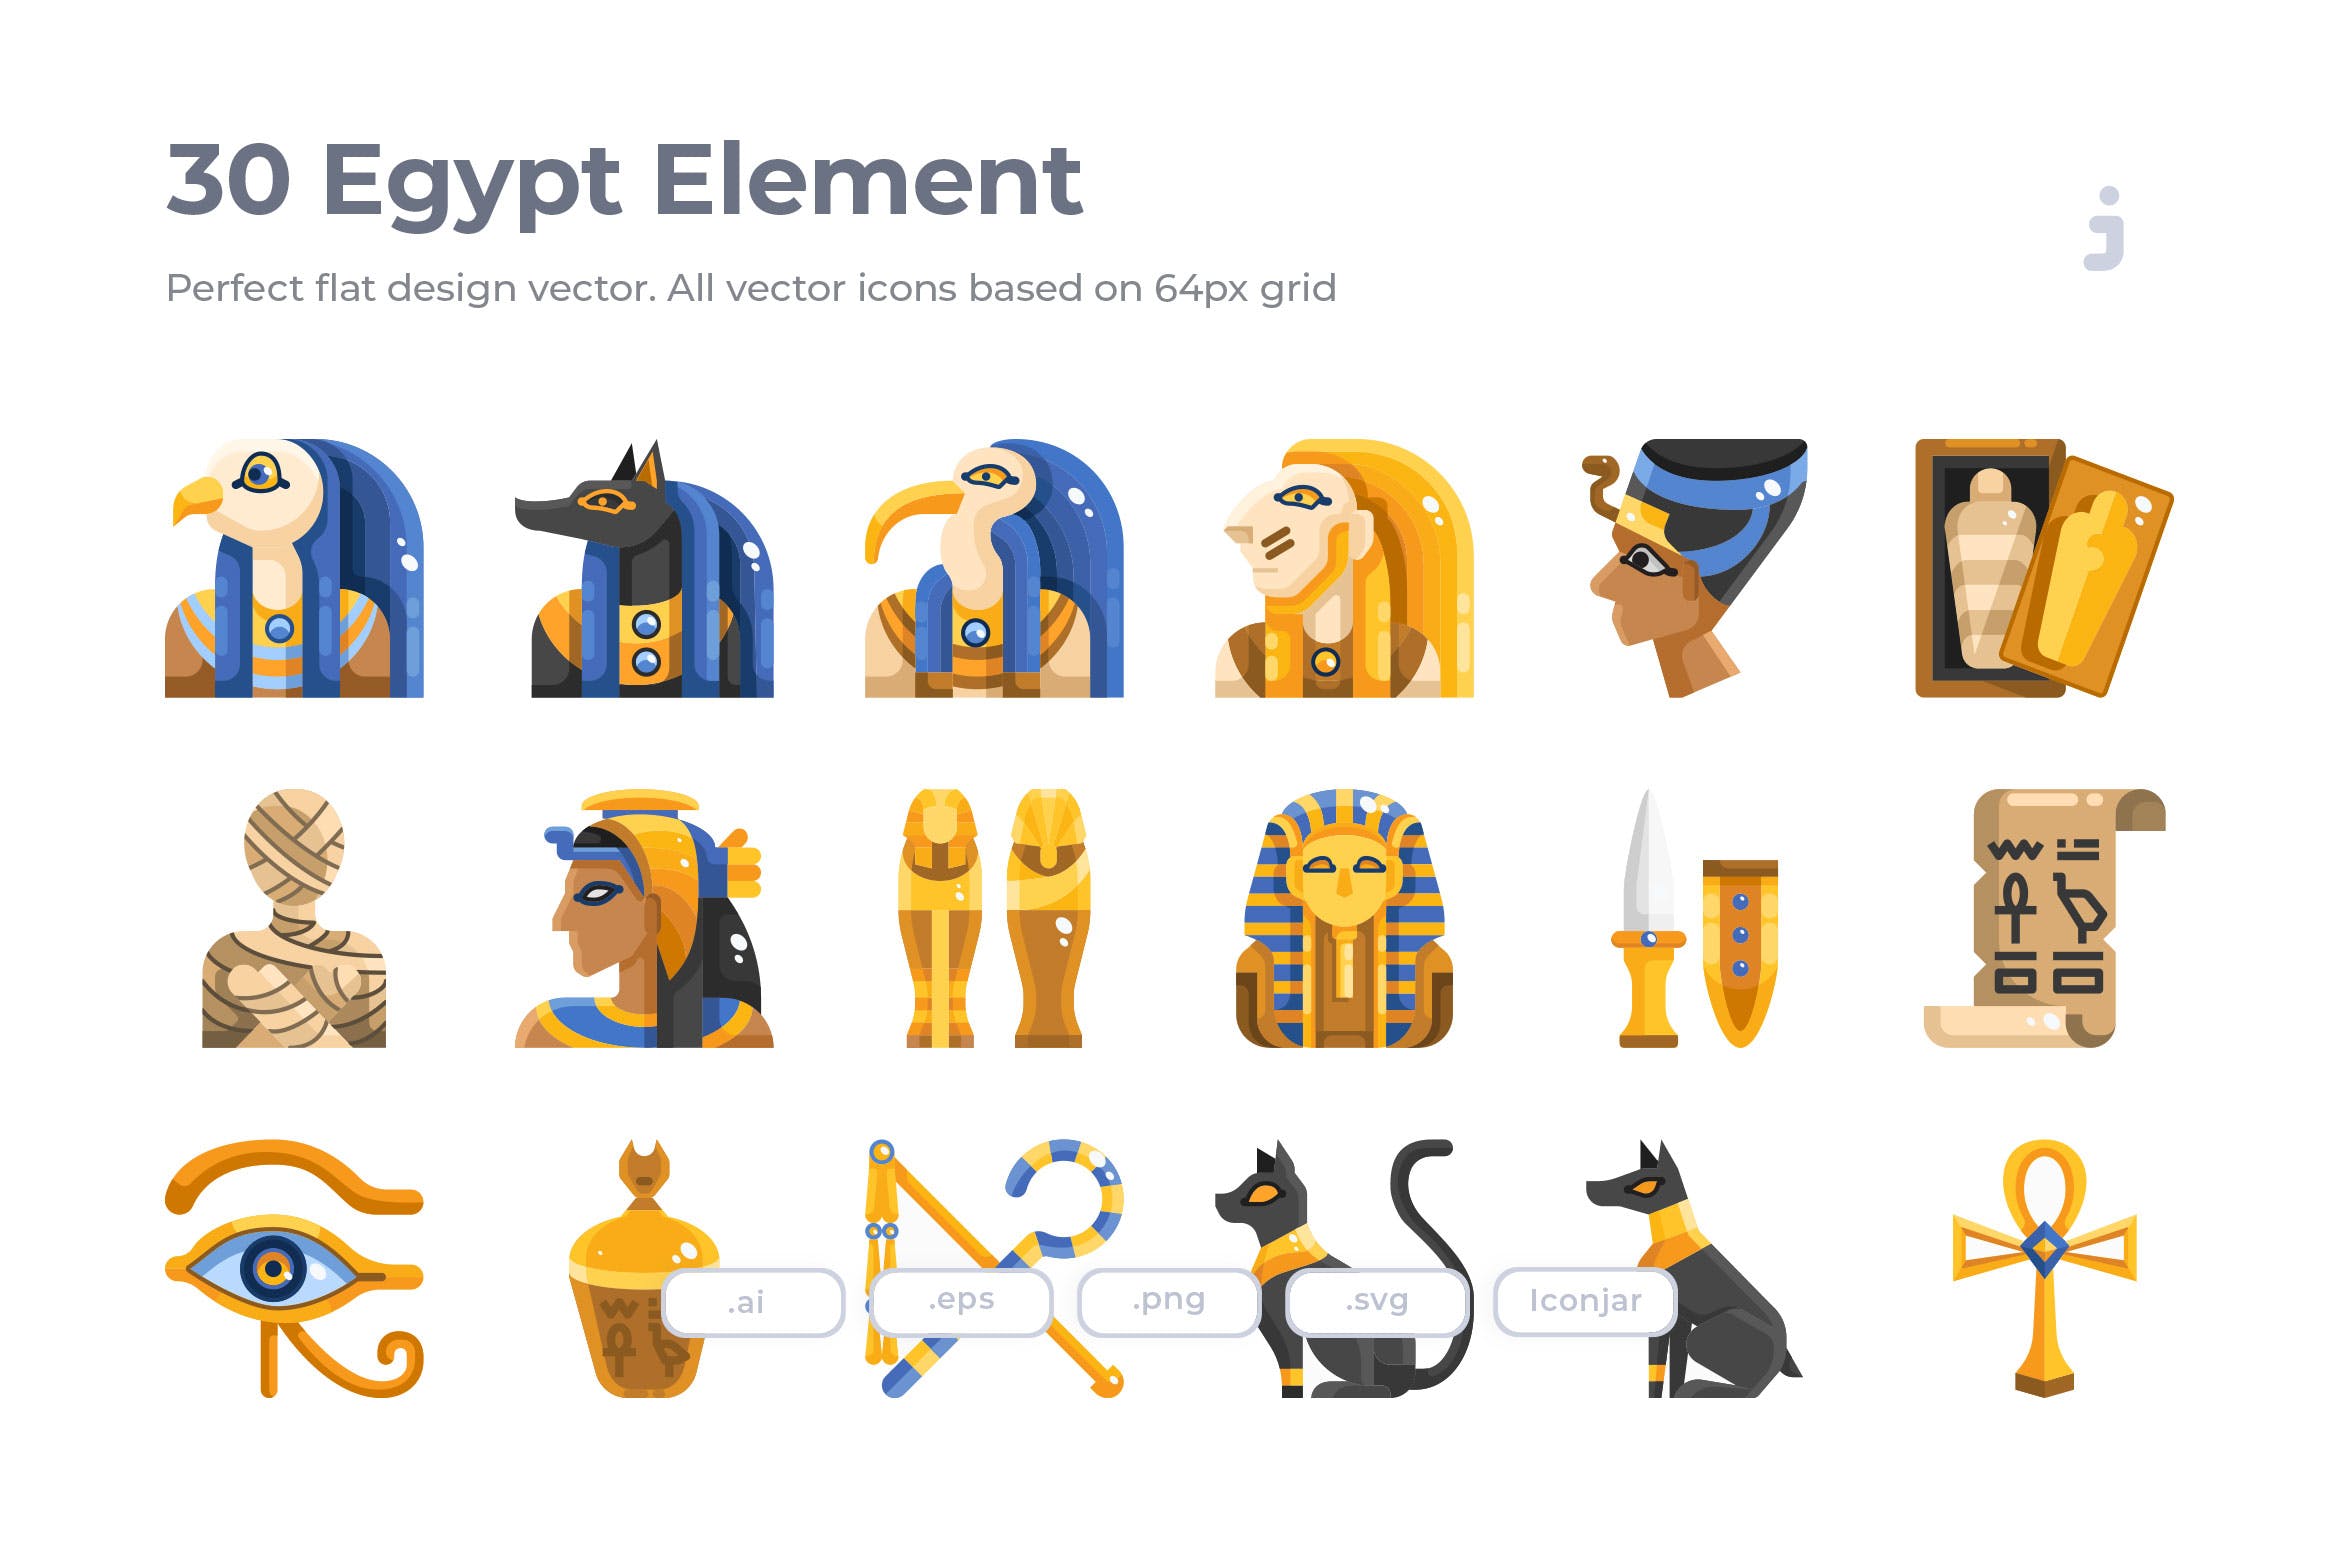  30个埃及元素图标素材源文件下载30 Egypt Element Icons Flat